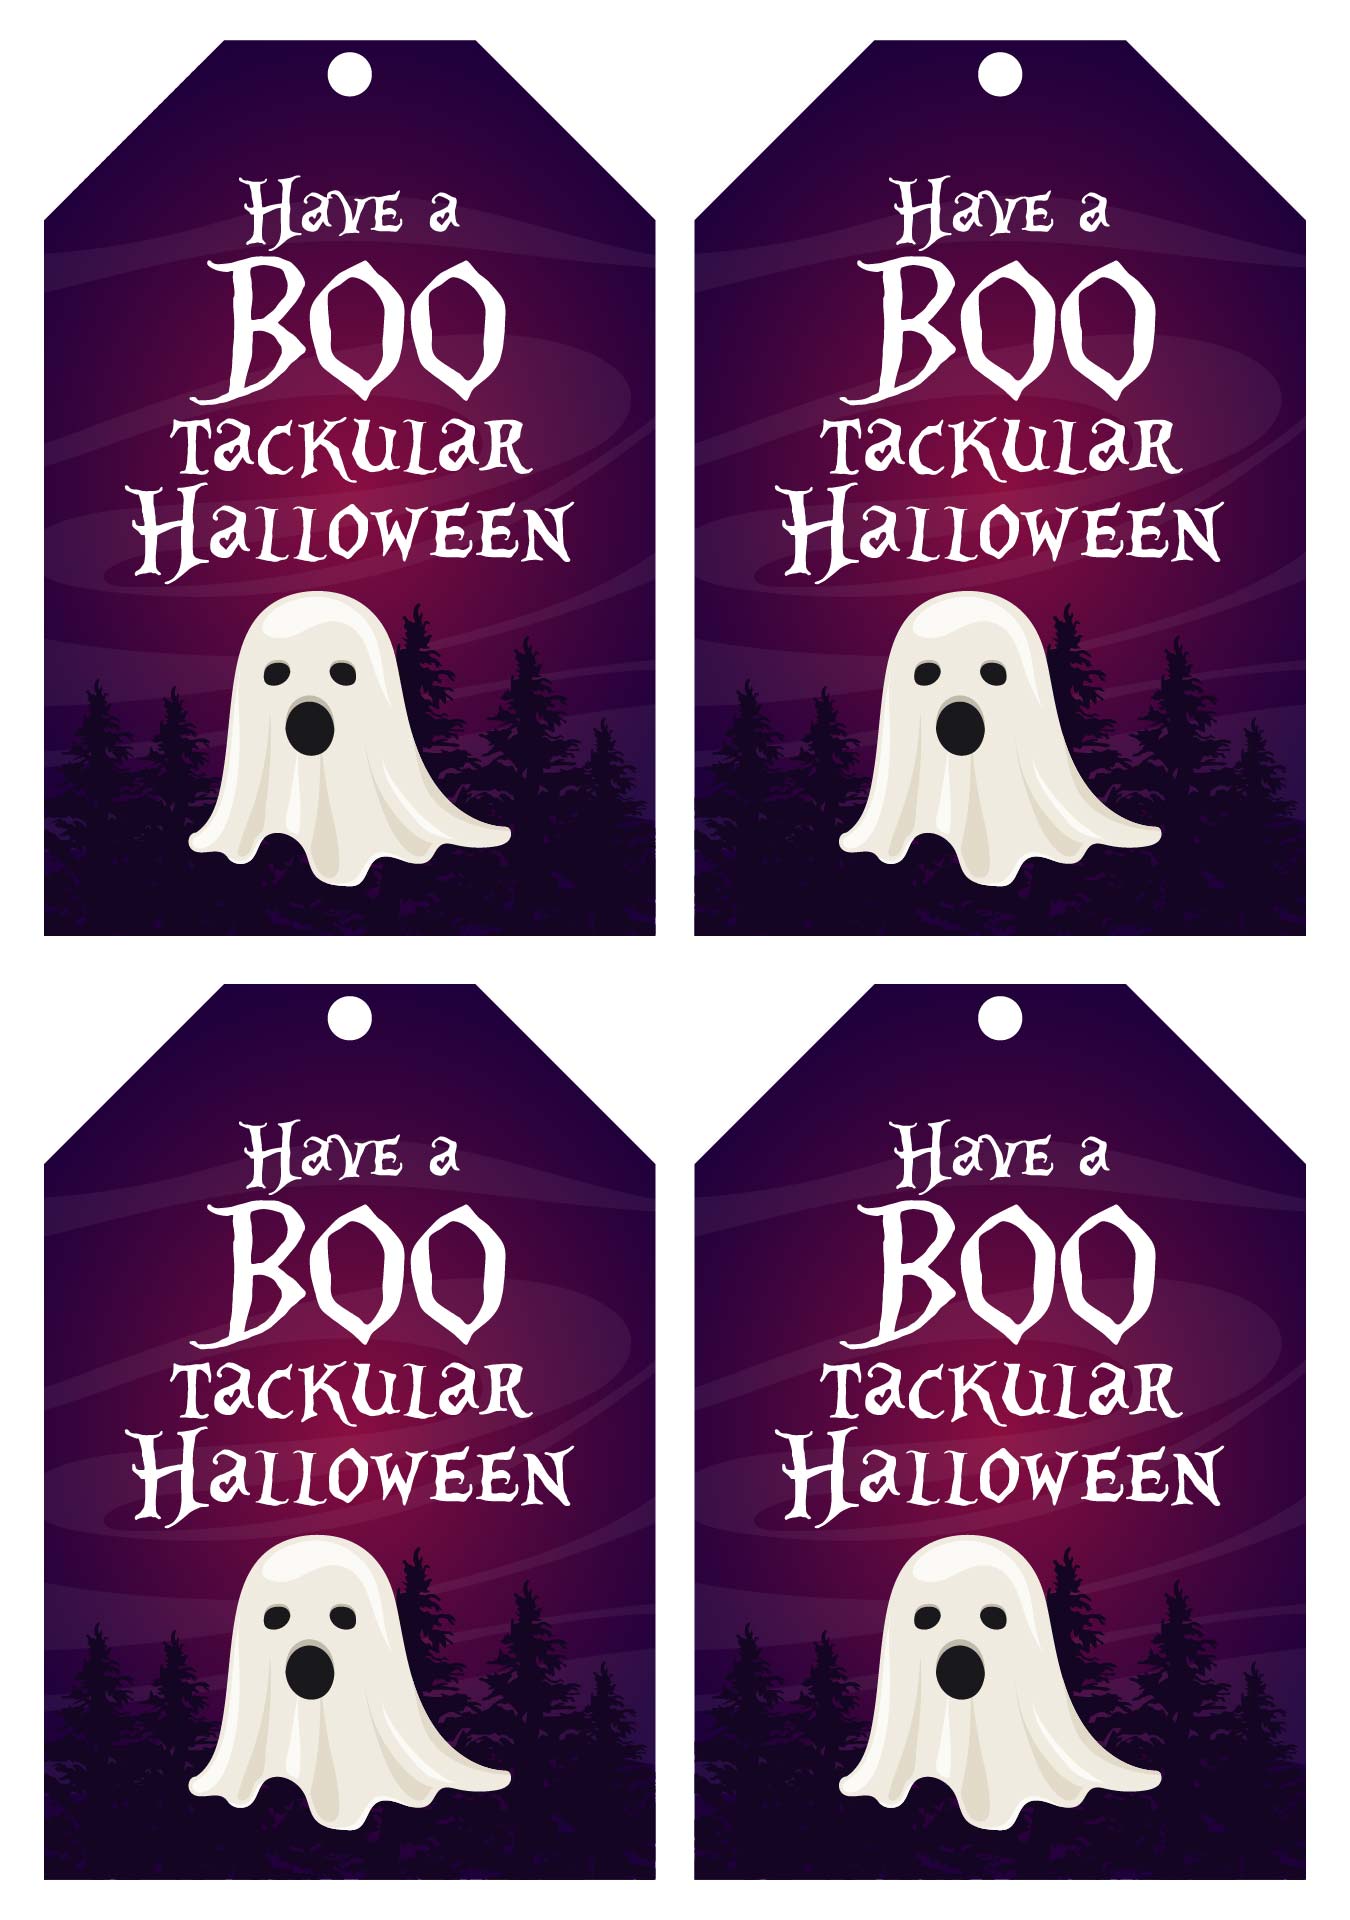 Printable Bootackular Halloween Gift Tags